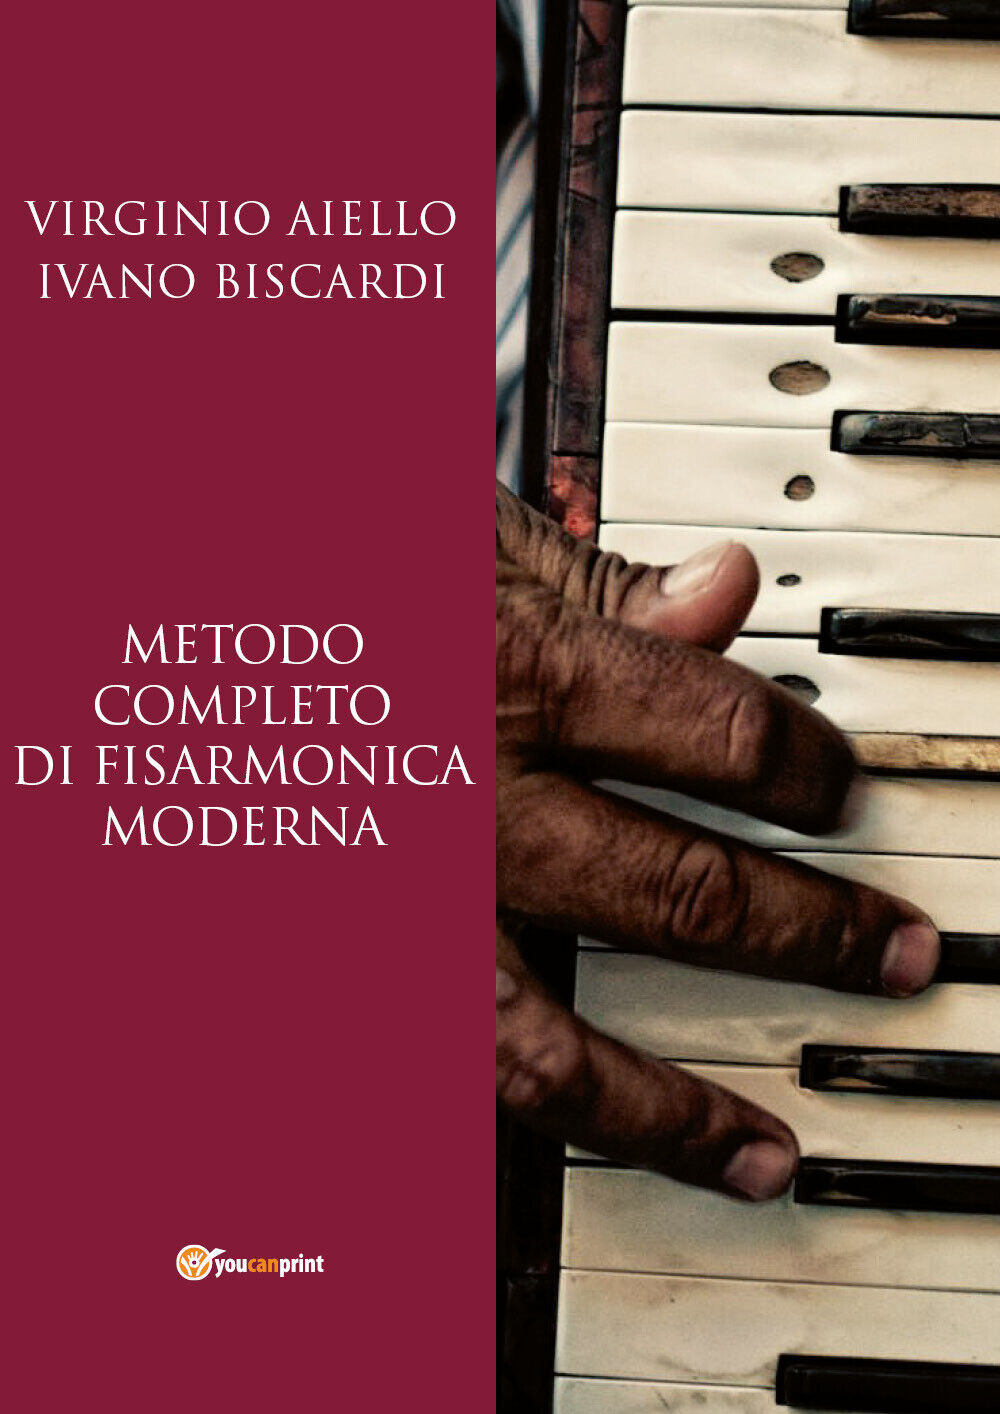 Metodo completo di fisarmonica moderna di Virginio Aiello, Ivano Biscardi,  2018